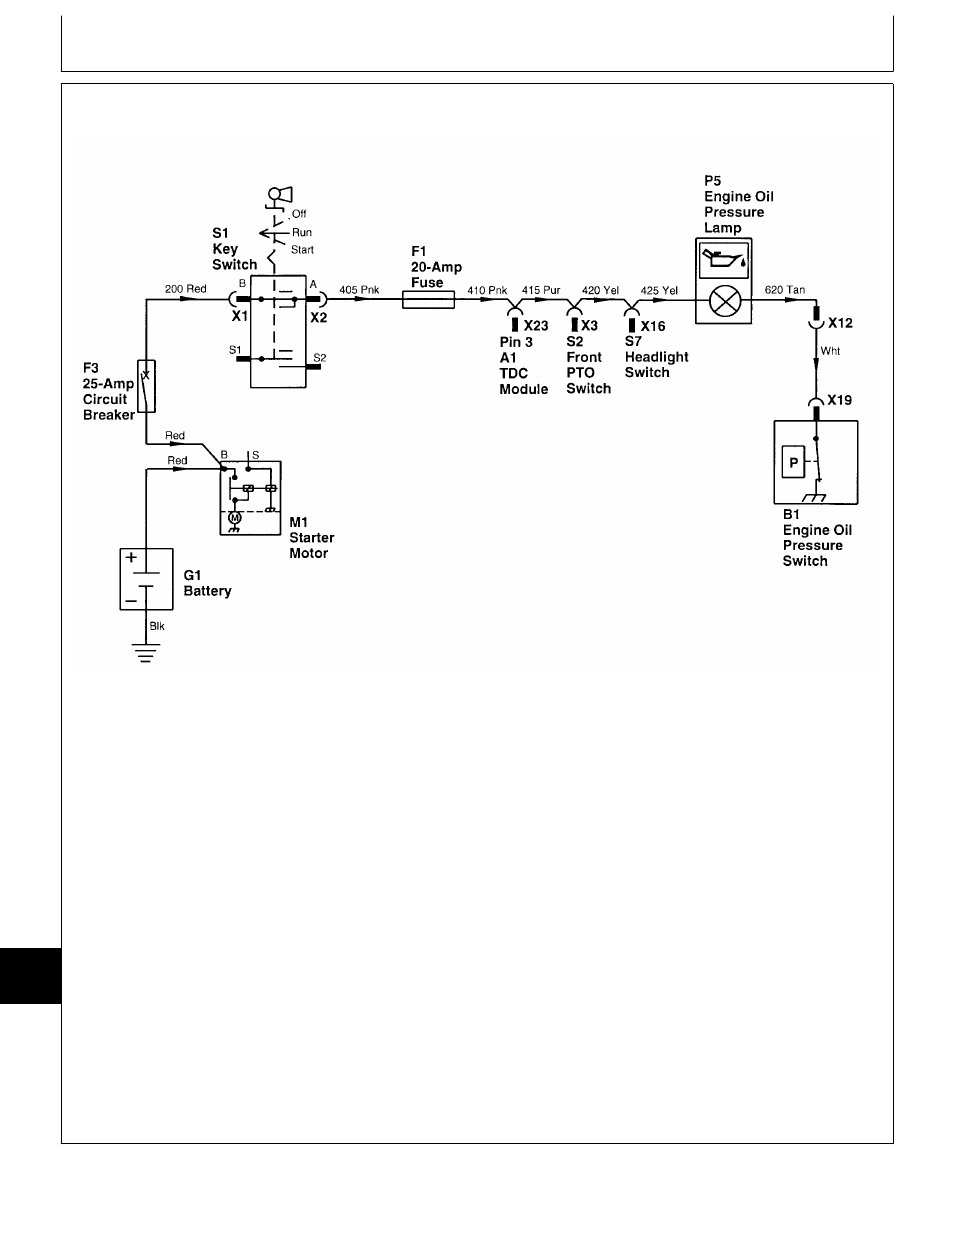 Oil pressure lamp circuit operation | John Deere 318 User Manual | Page 312 / 440